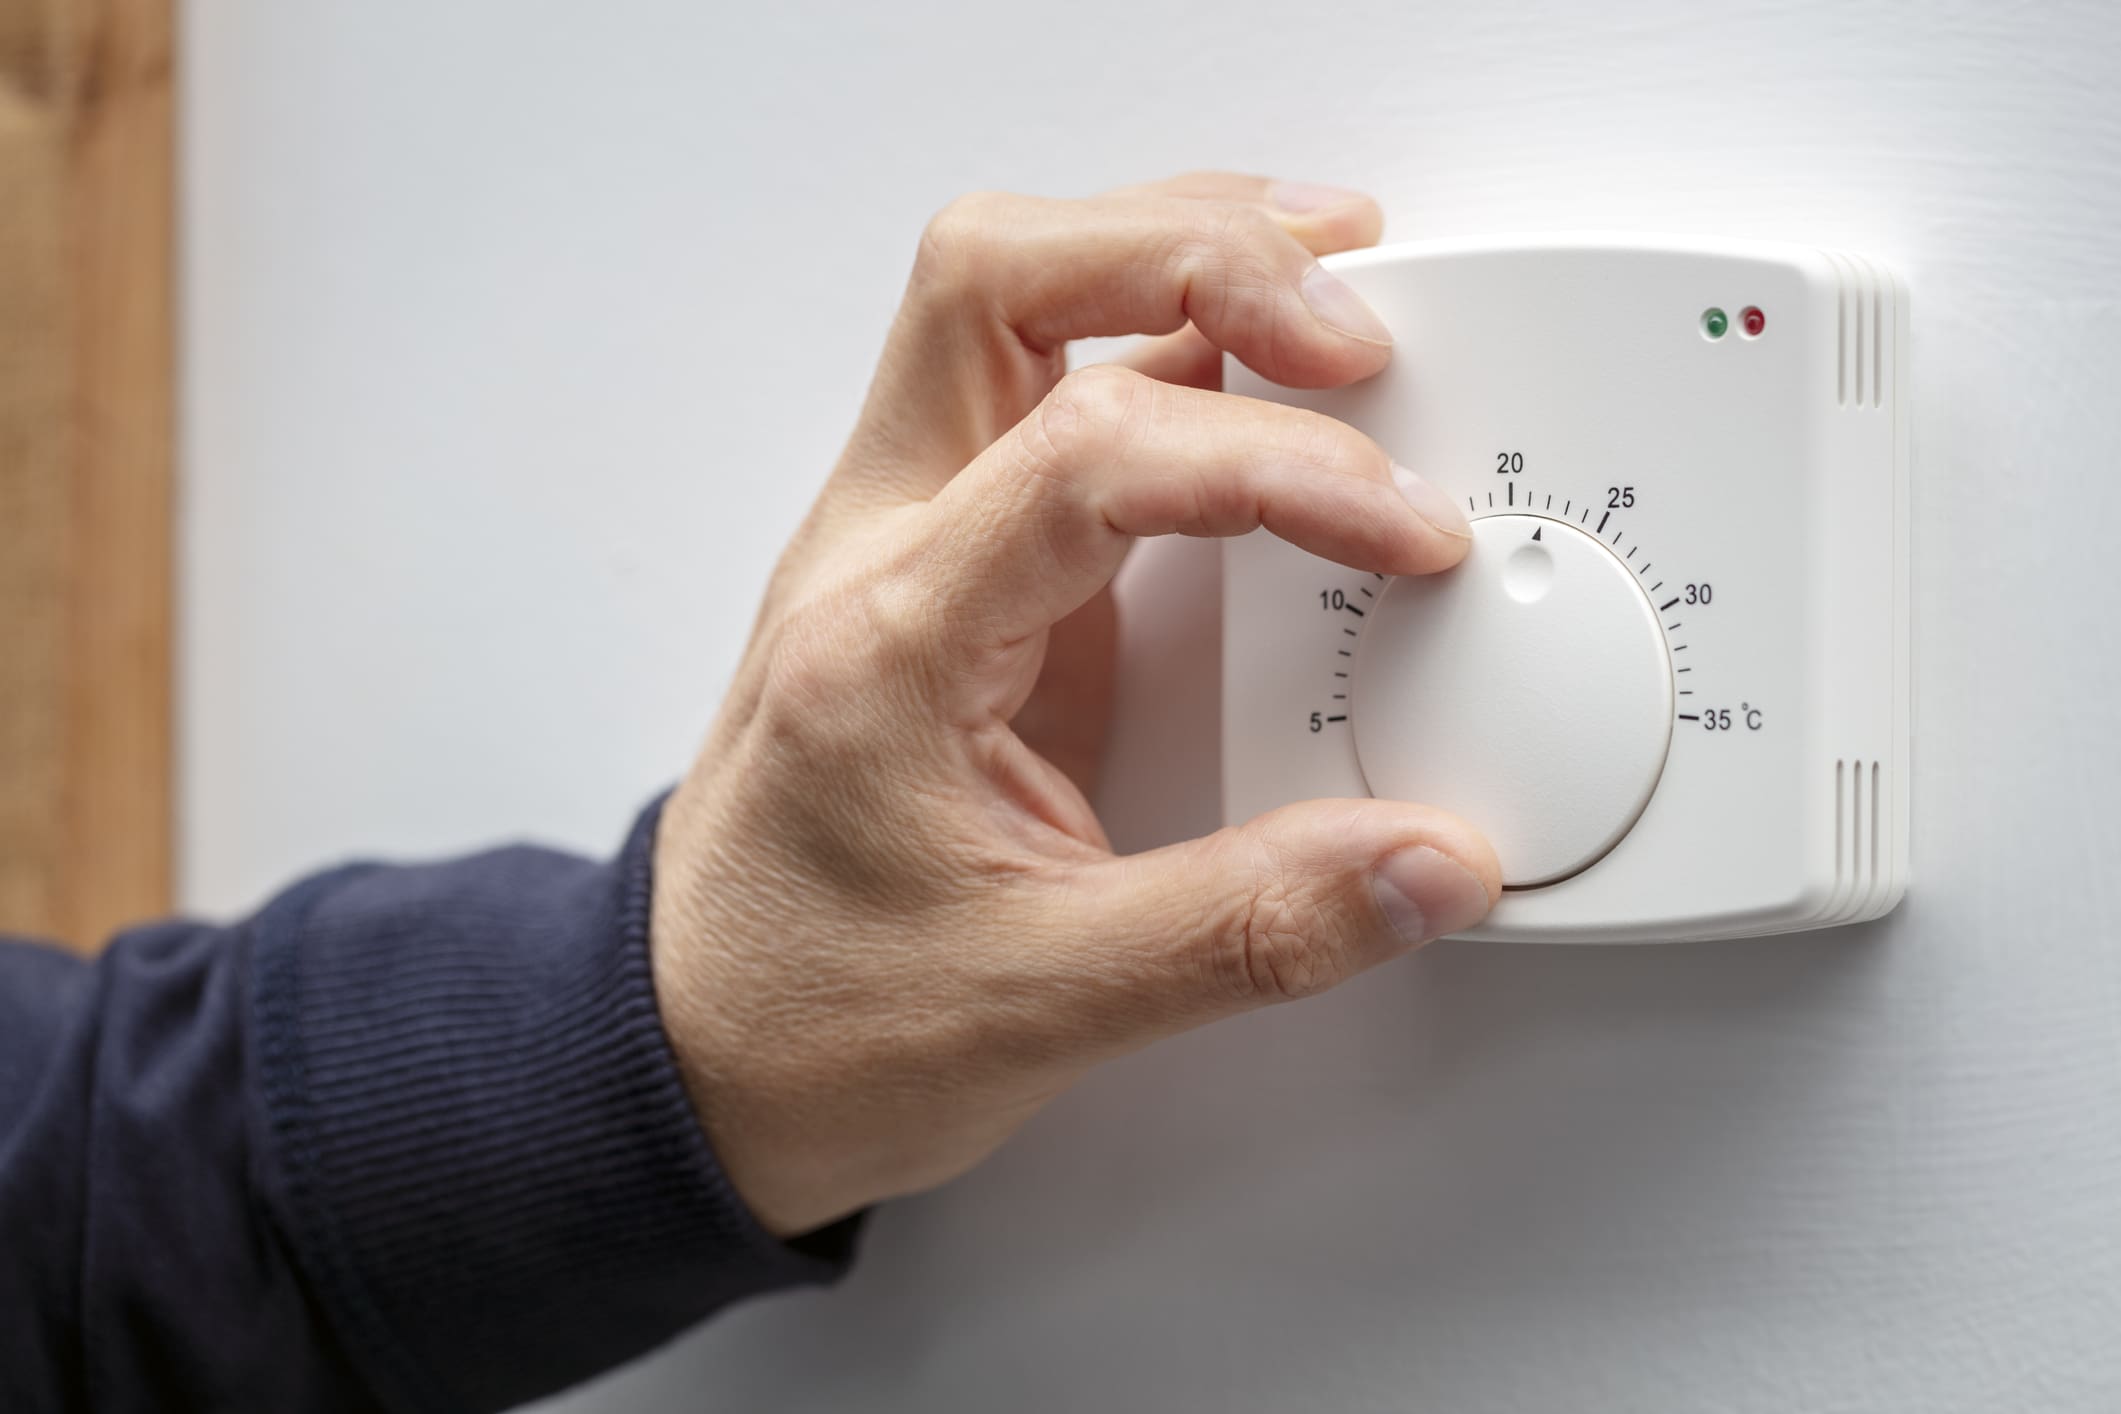 központi fűtés termosztátot állítja be egy férfikéz